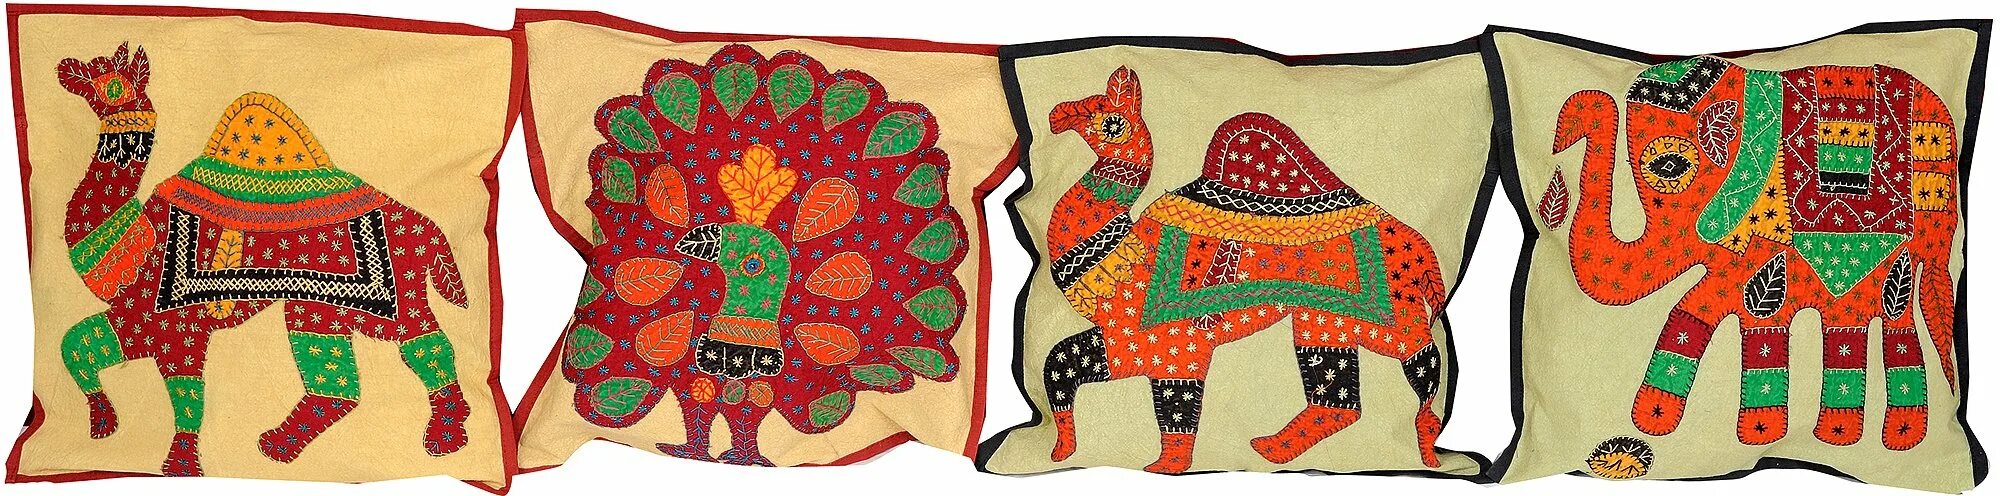 B0k3p india. Орнаментальные мотивы в художественном текстиле Индии. Индийский текстиль. Художественный текстиль. Подушки в индийском стиле.